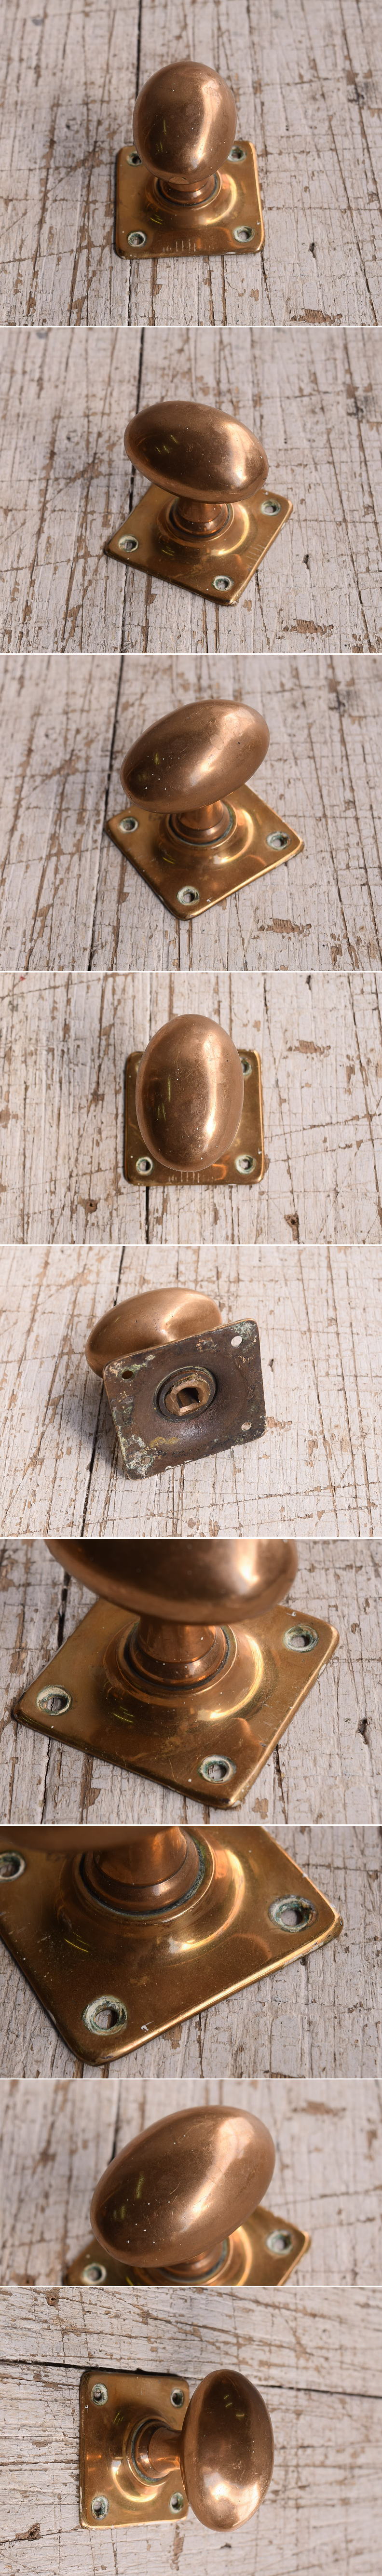 イギリス アンティーク 真鍮製 ドアノブ 建具金物 12019